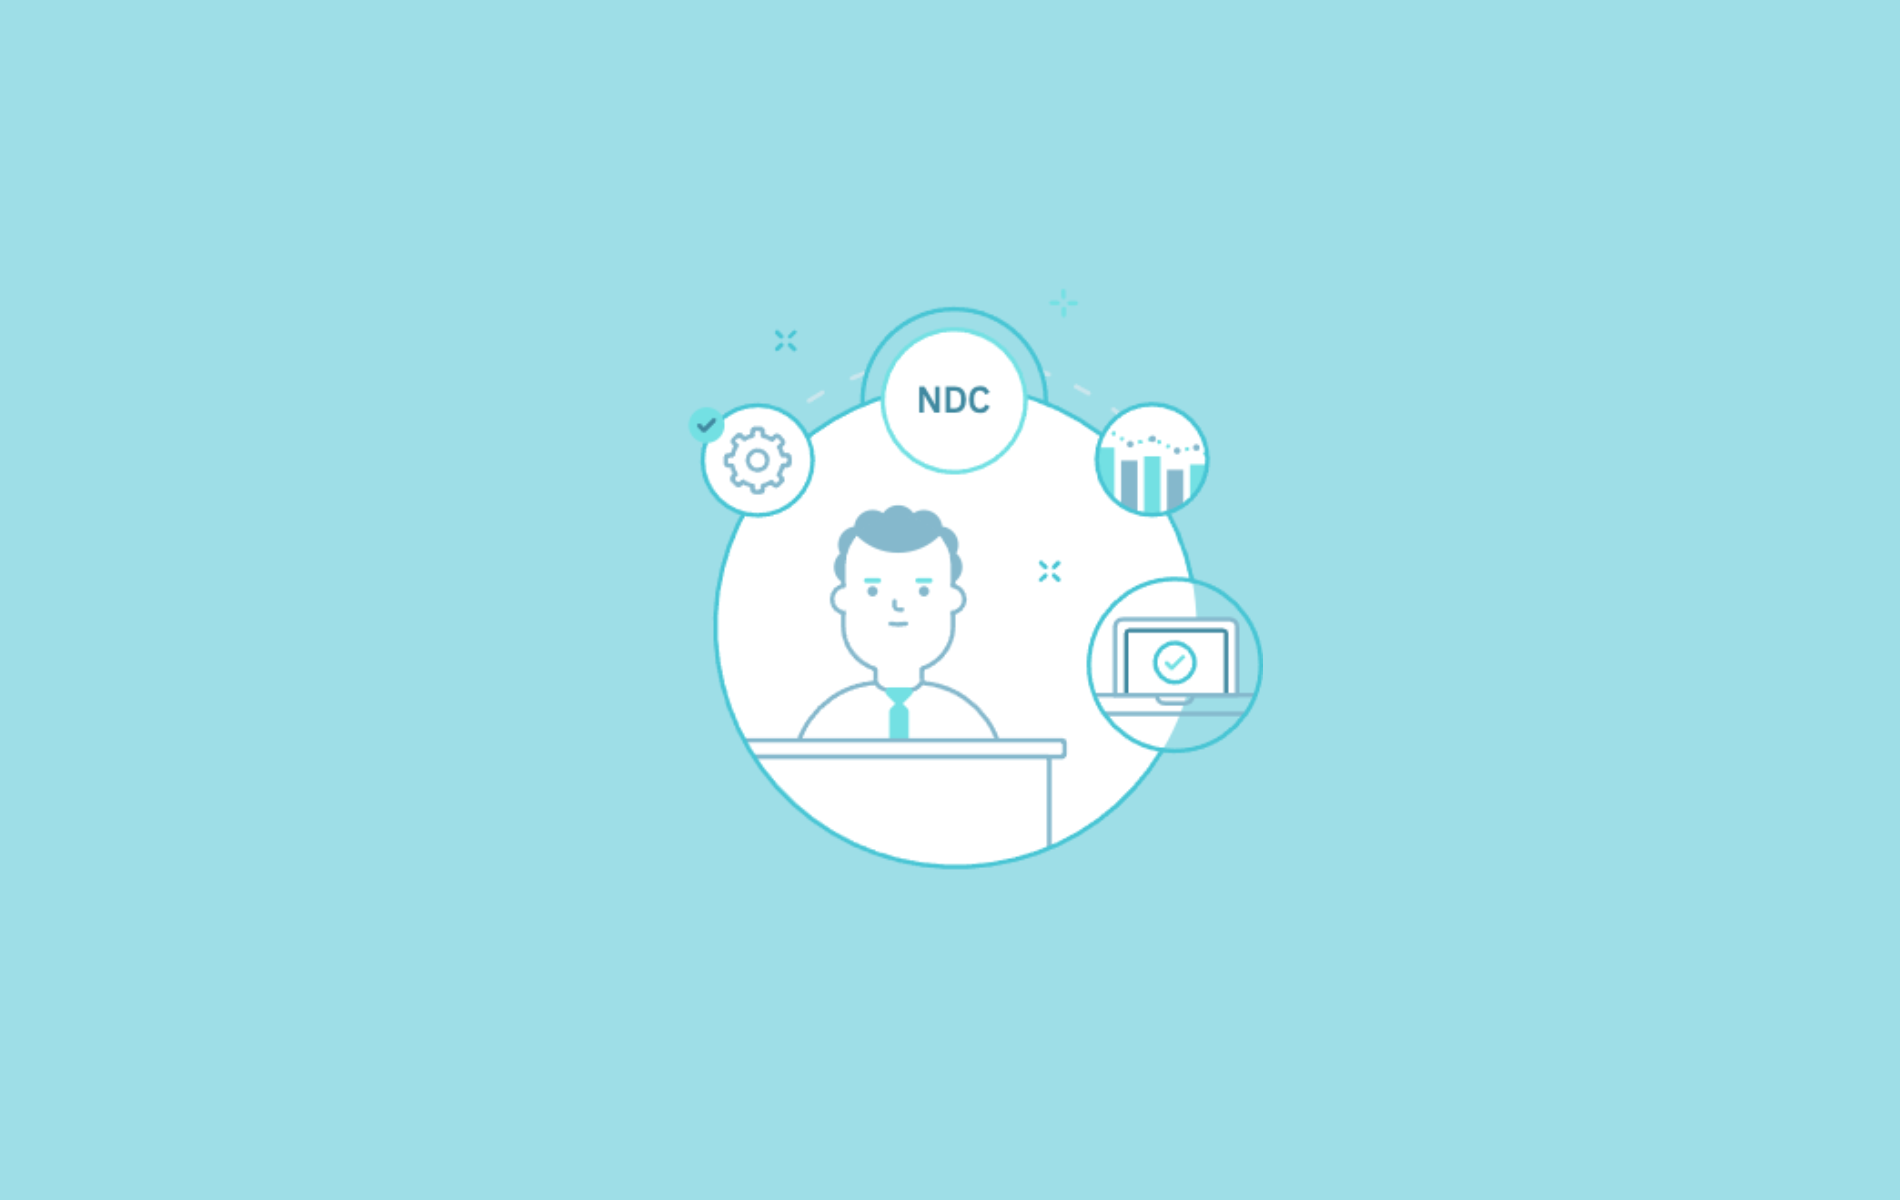 Tras la implementación de NDC, el módulo se ha hecho cargo de las tareas de reporting y gestión de la configuración. Pedro empieza a focalizar sus esfuerzos en tareas estratégicas y no operativas.